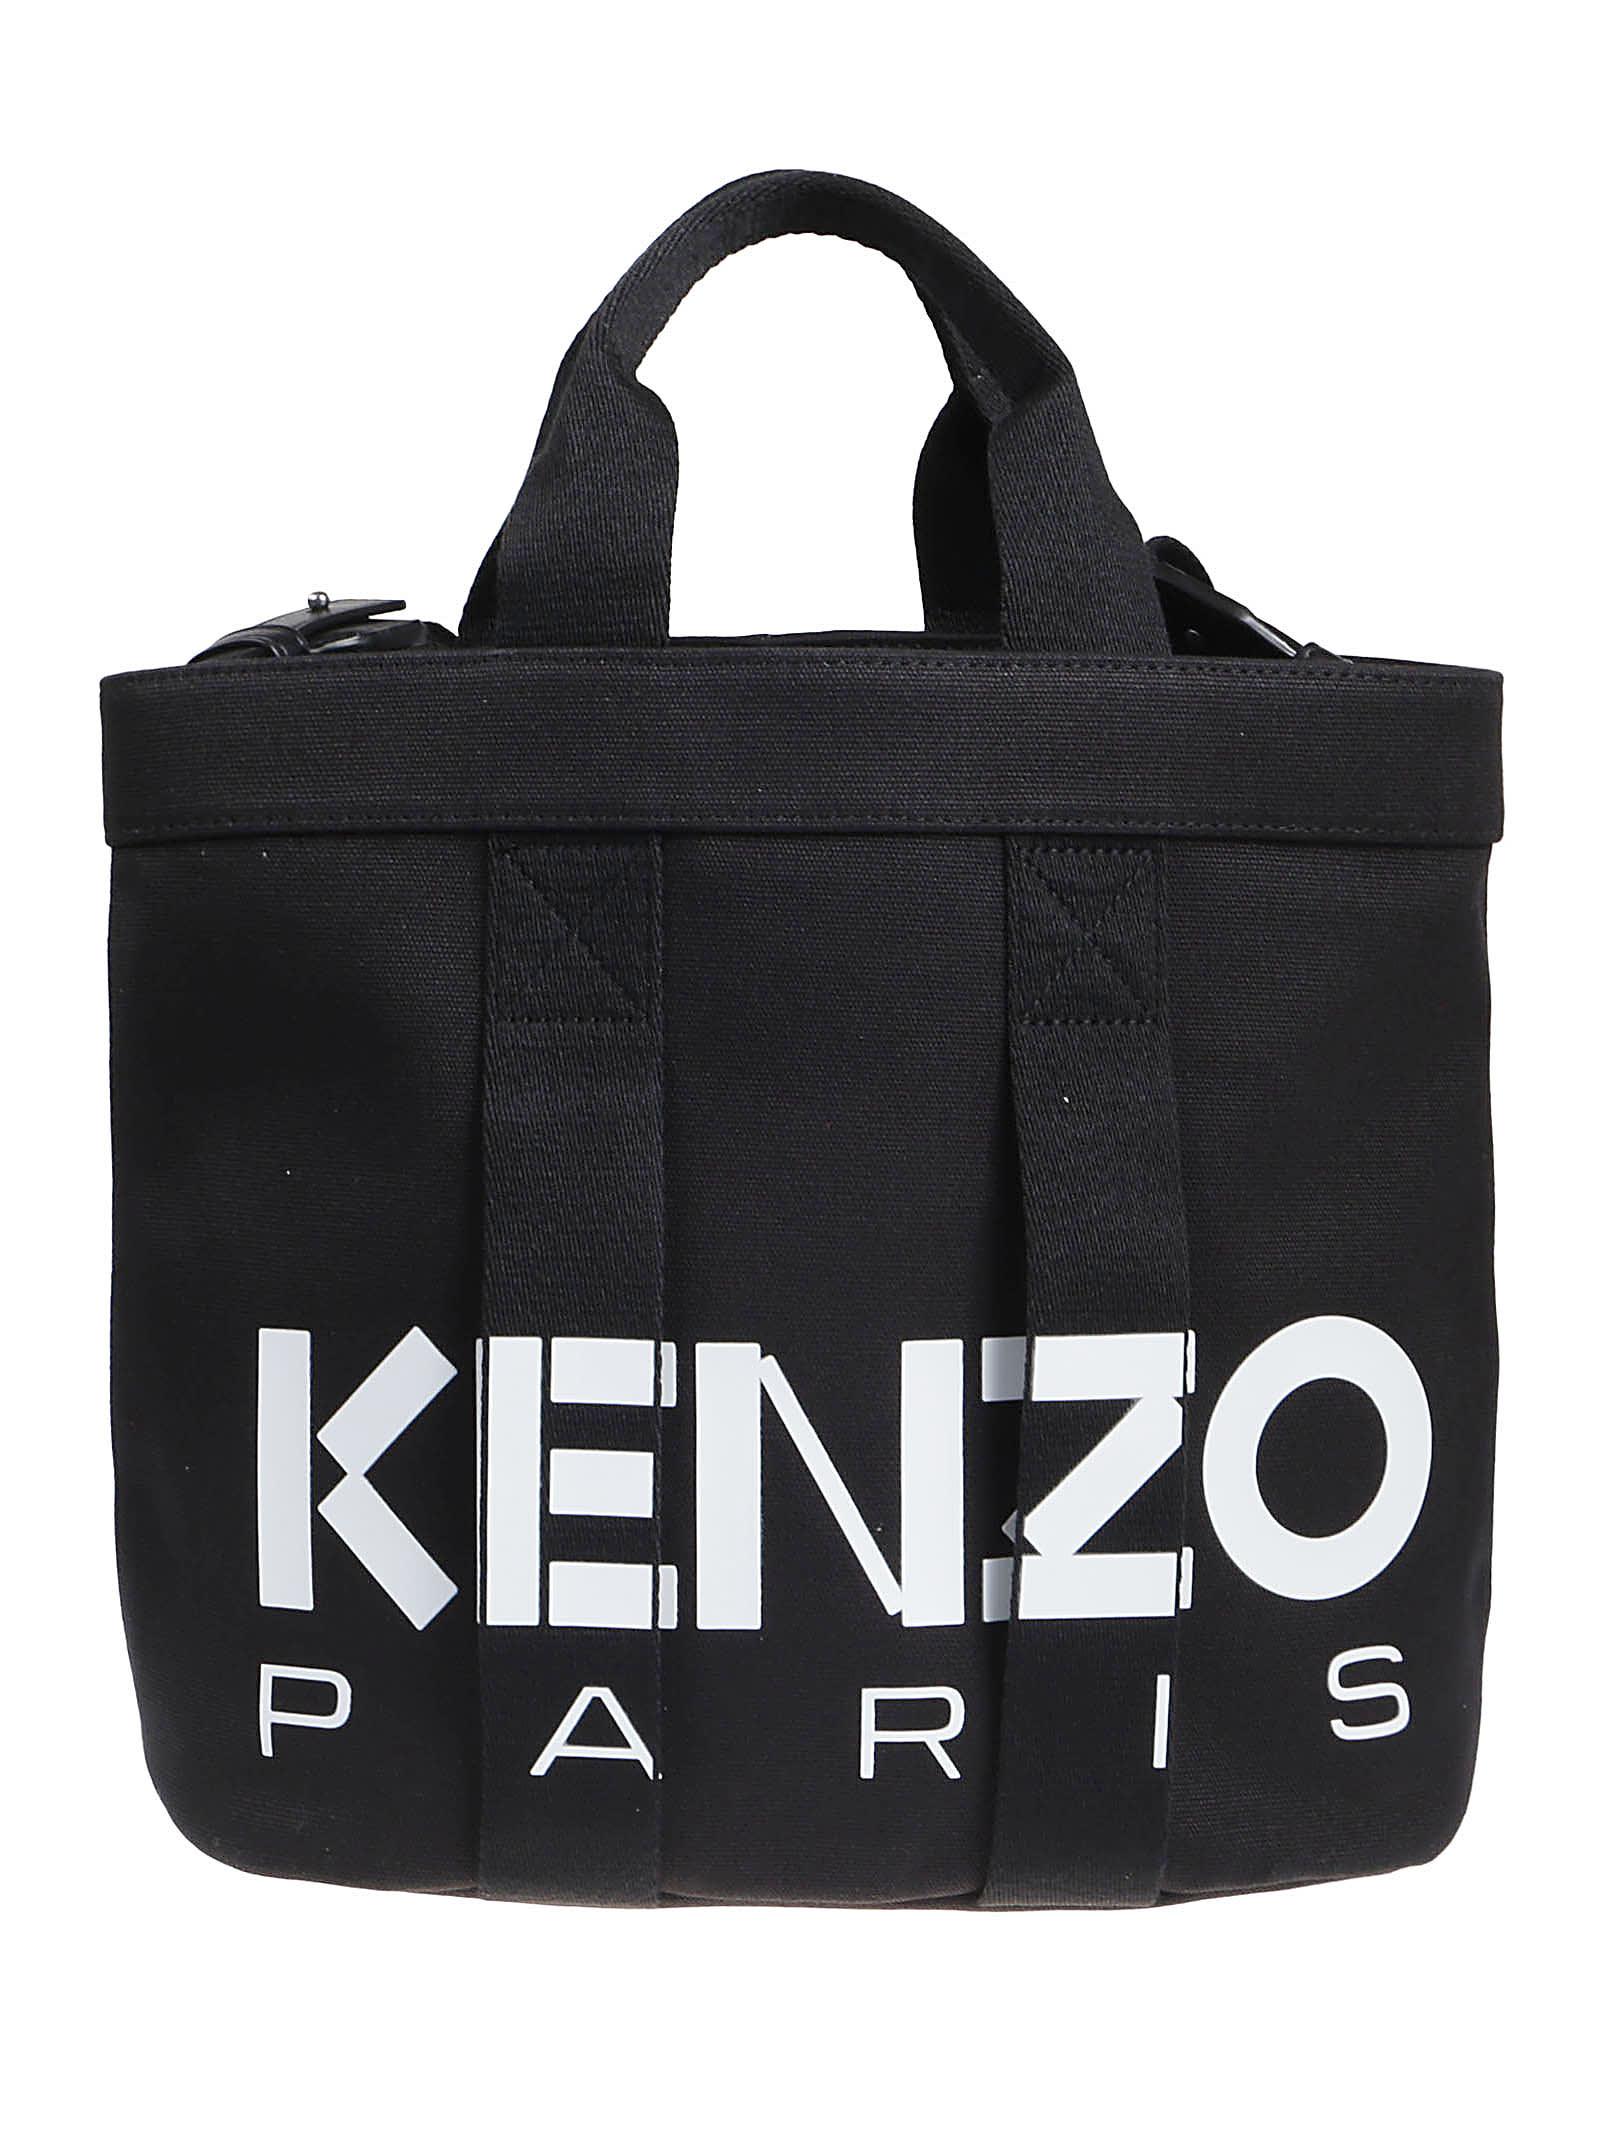 KENZO Logo-printed Top Handle Bag in Black | Lyst